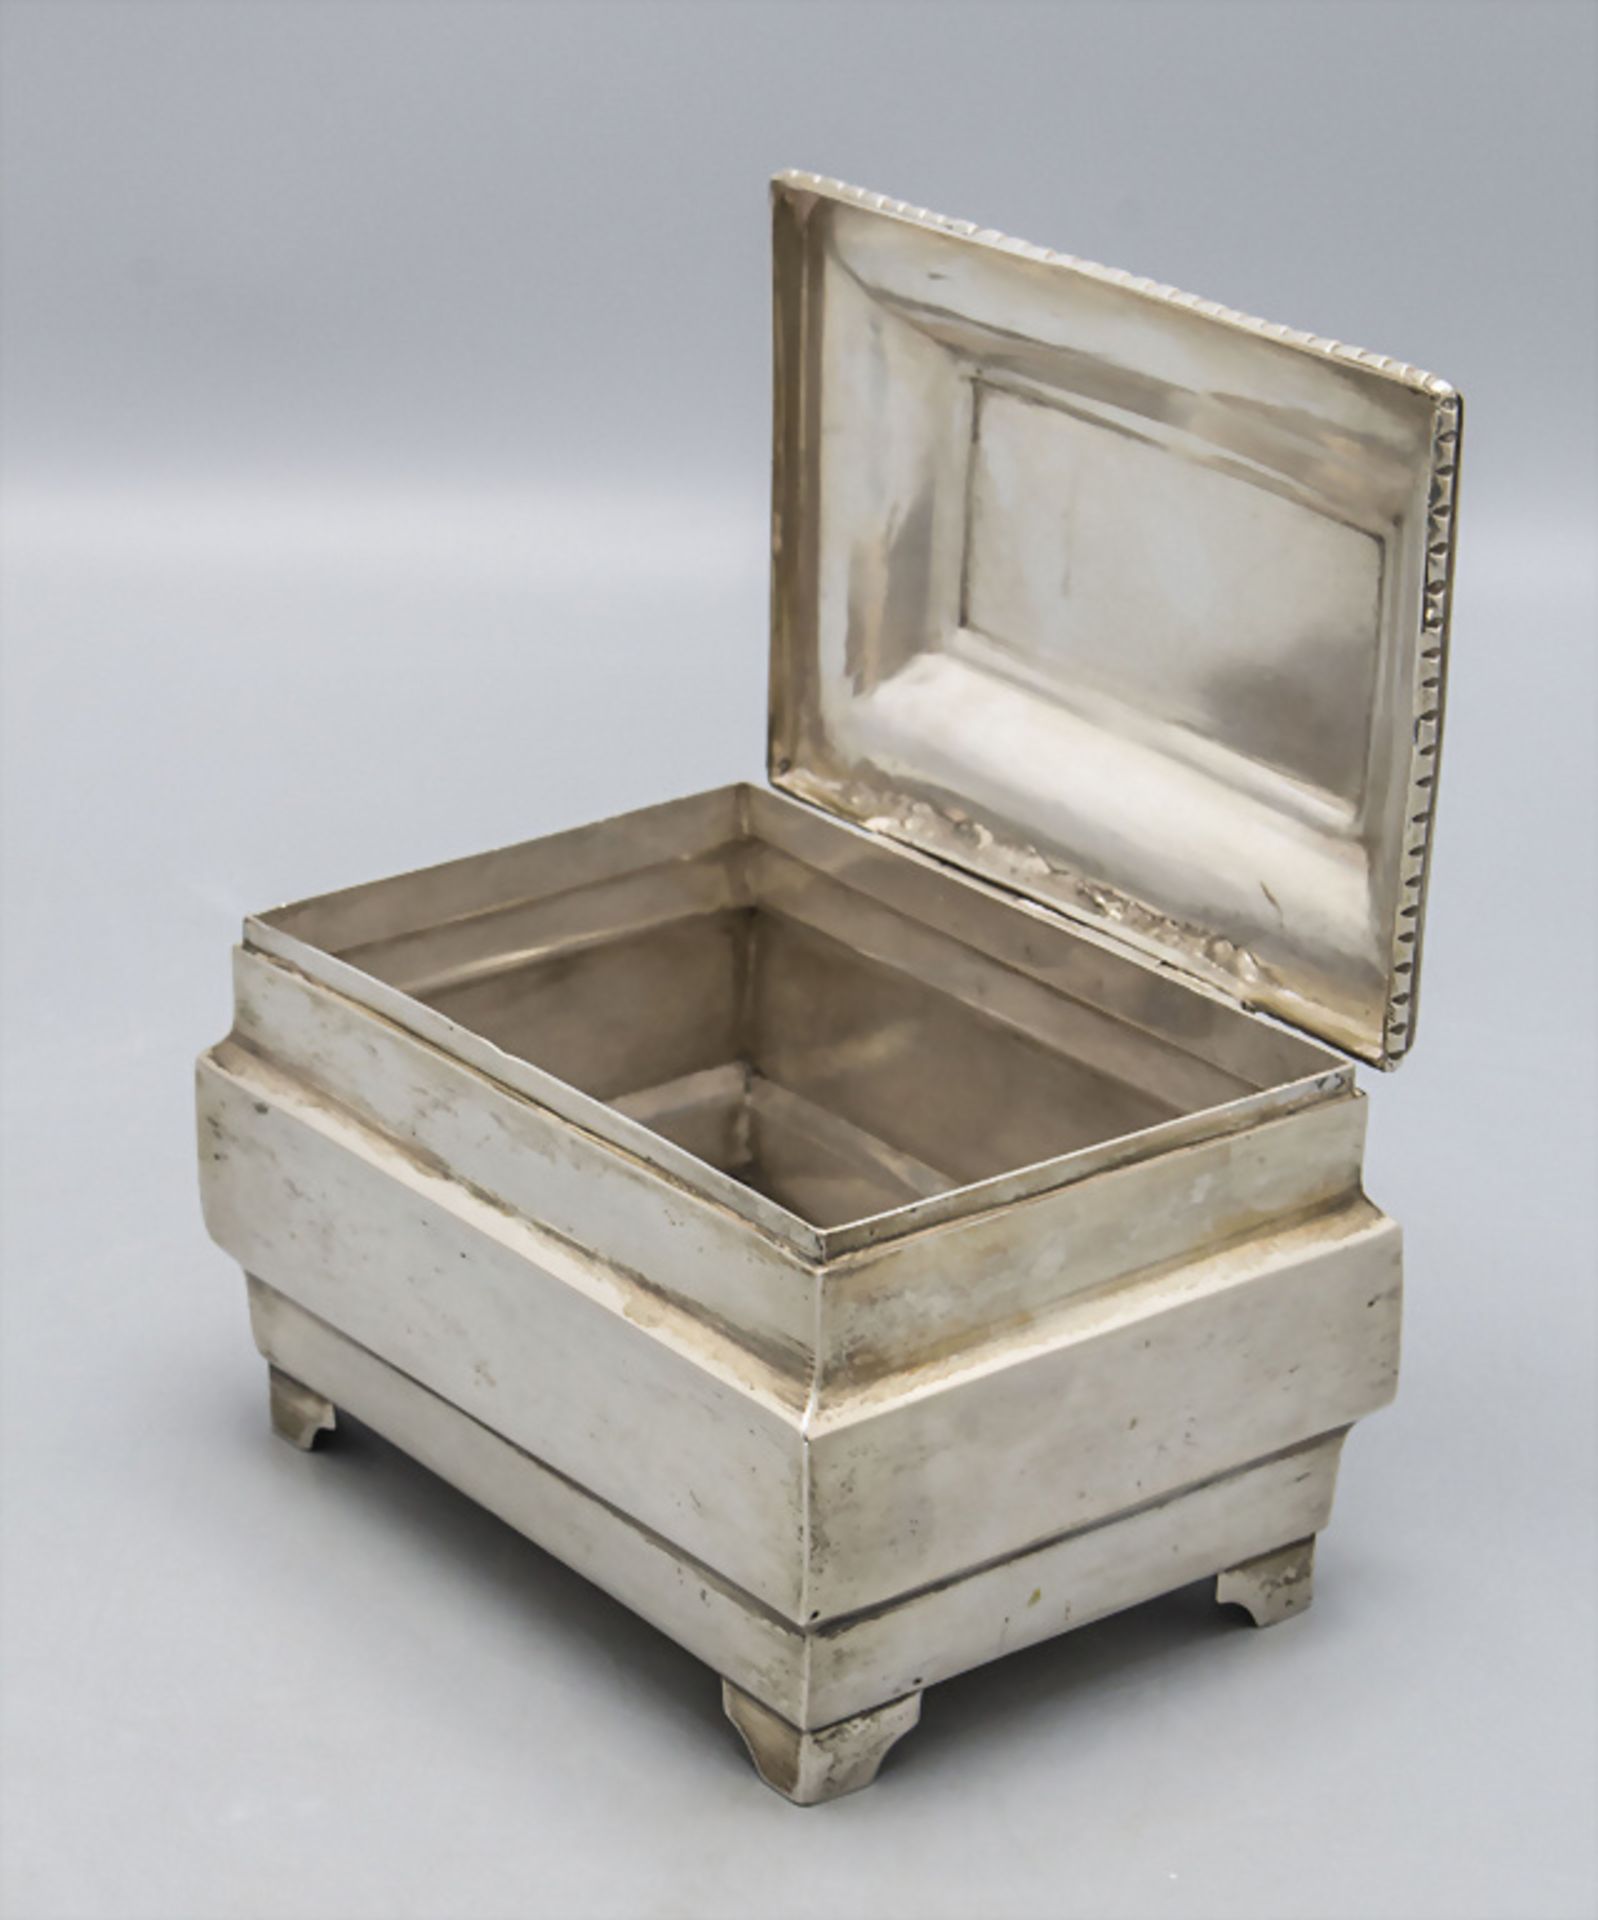 Art Déco Deckeldose / A lidded box, Krakow, um 1925 - Image 4 of 6